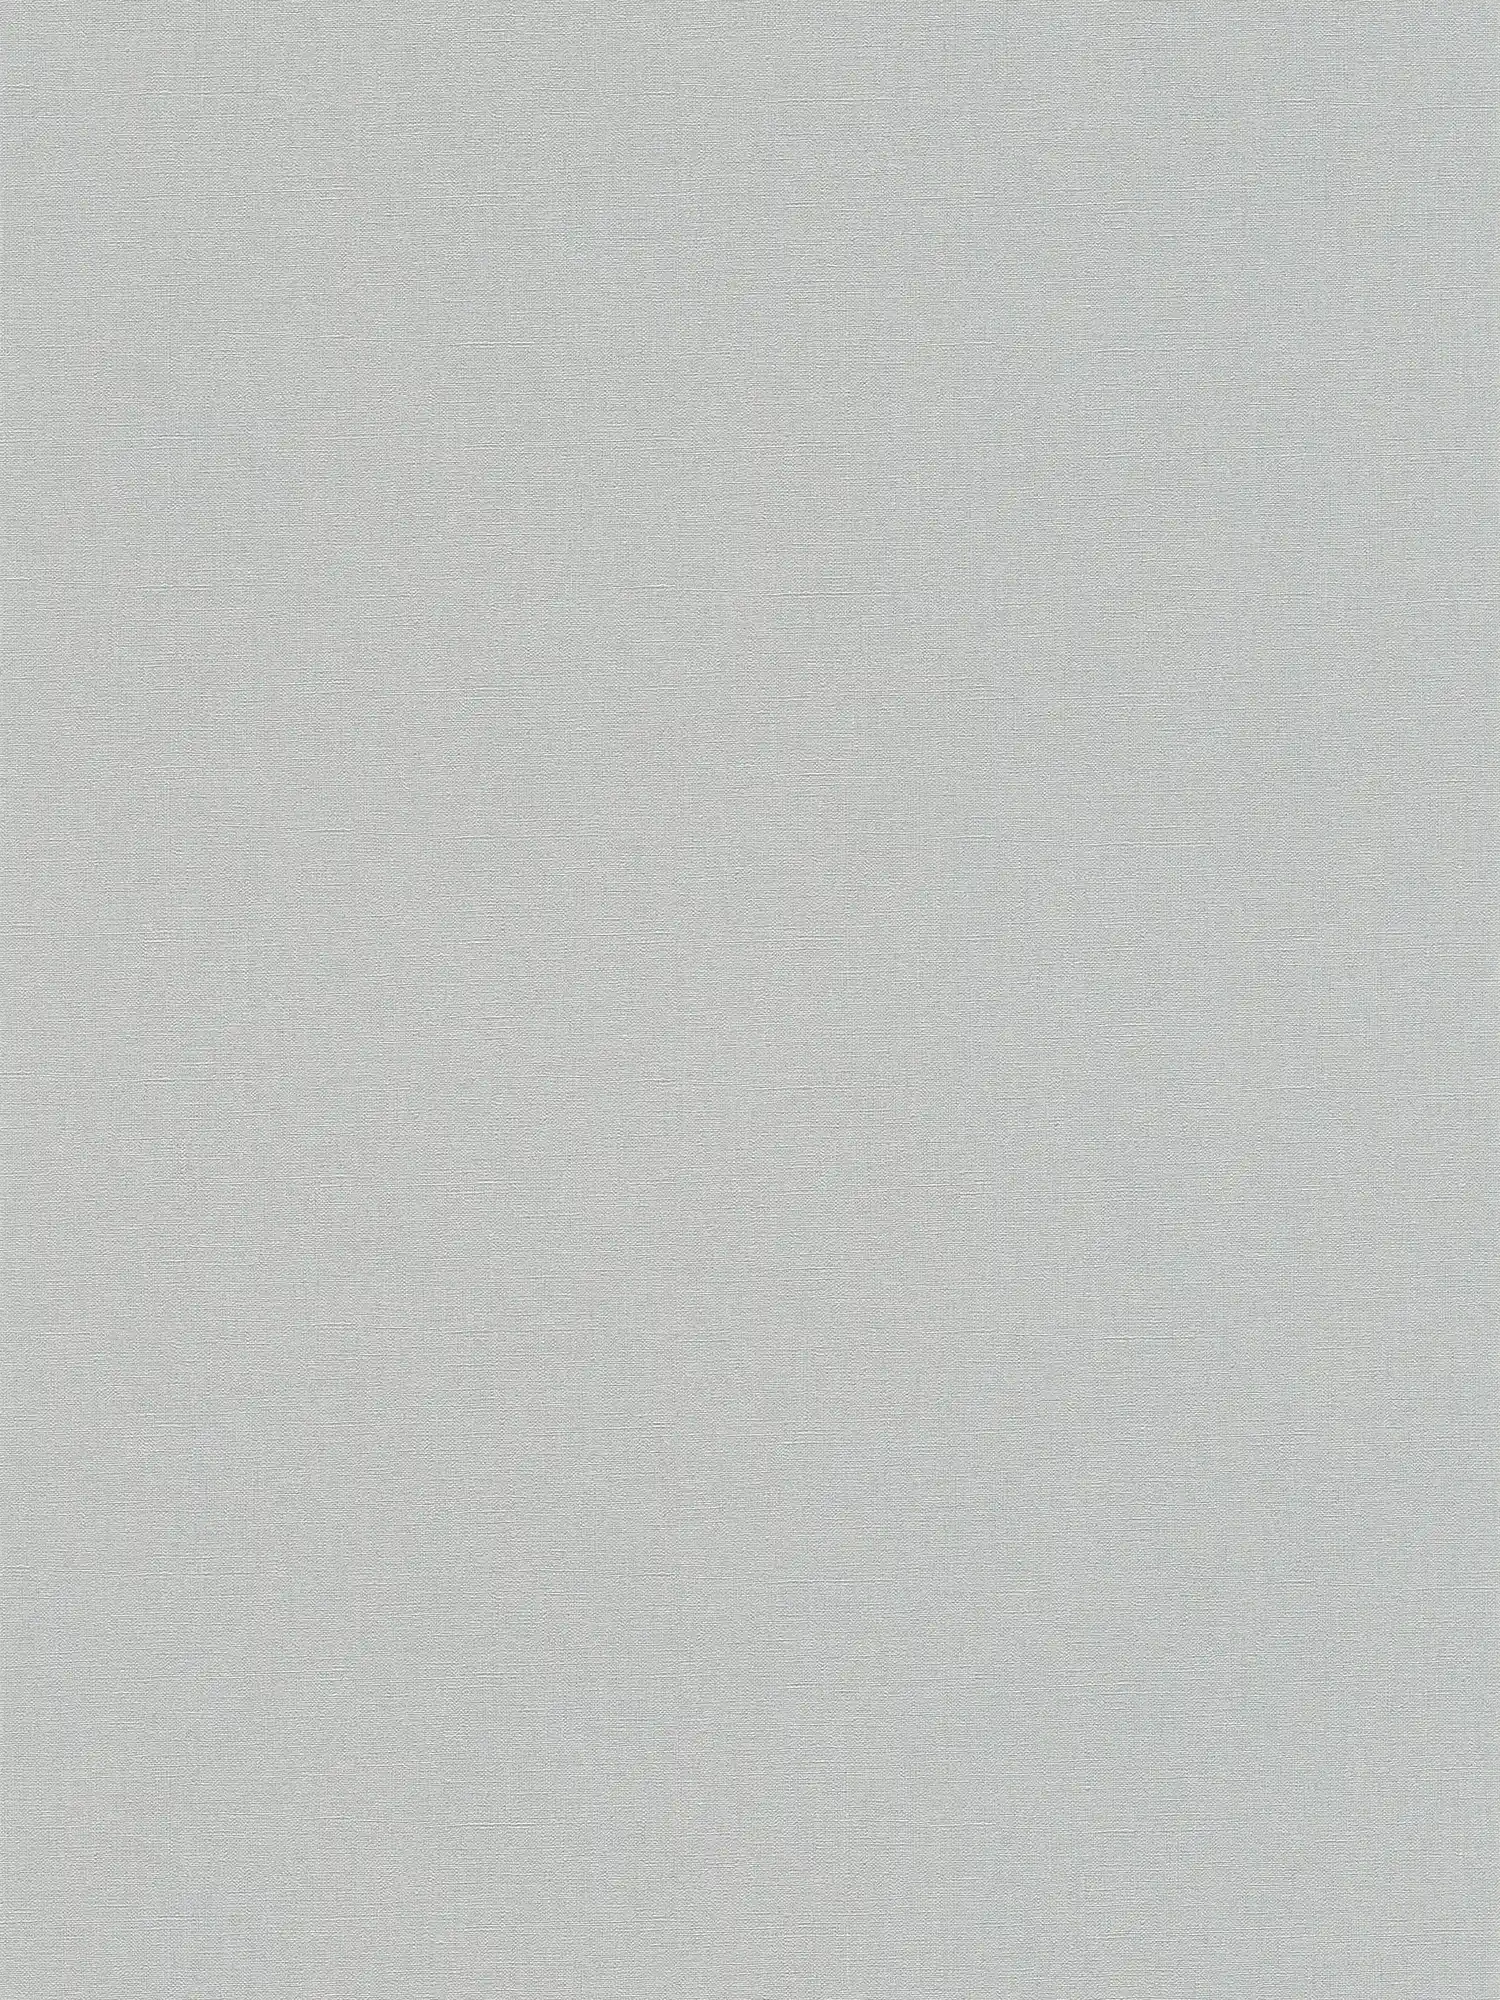 Papel pintado liso con textura ligera - gris, gris oscuro
